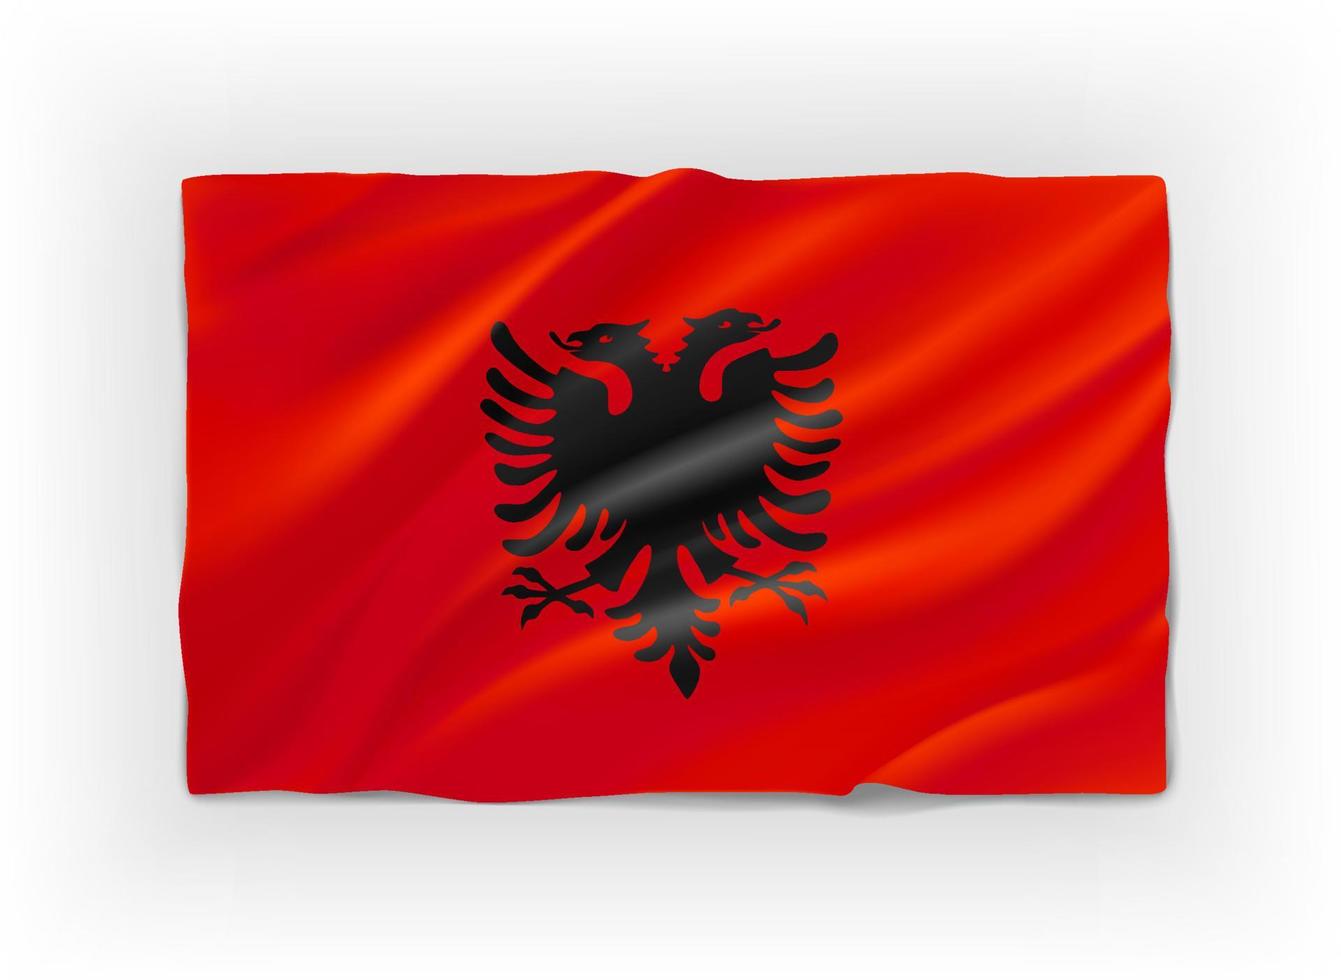 bandiera rossa e nera dell'albania. oggetto vettoriale 3d isolato su bianco